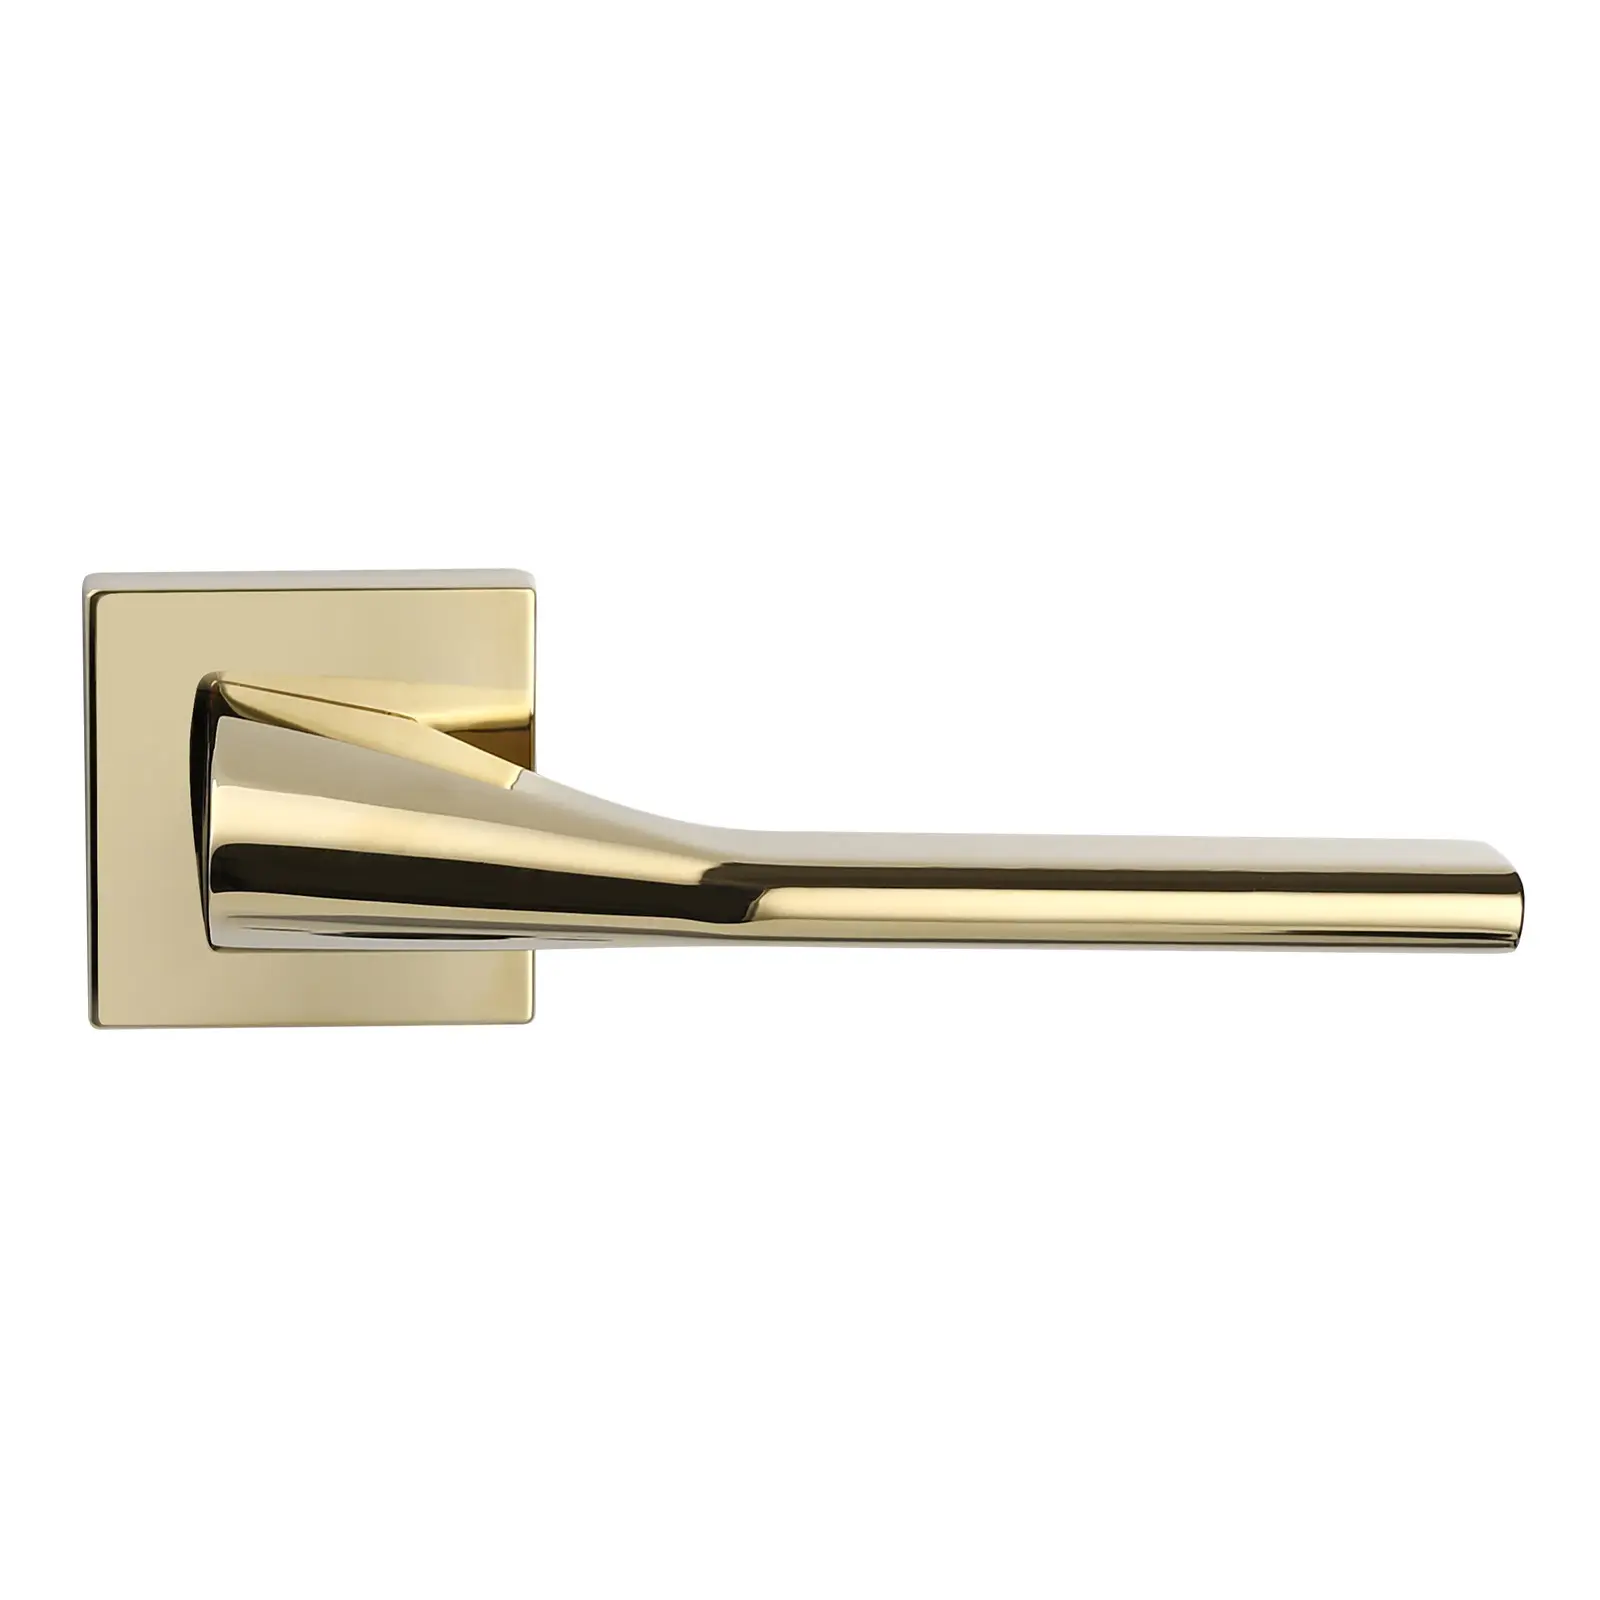 Filta lüks altın kapı kolu üreticisi altın tedarikçisi ev kapısı kolu